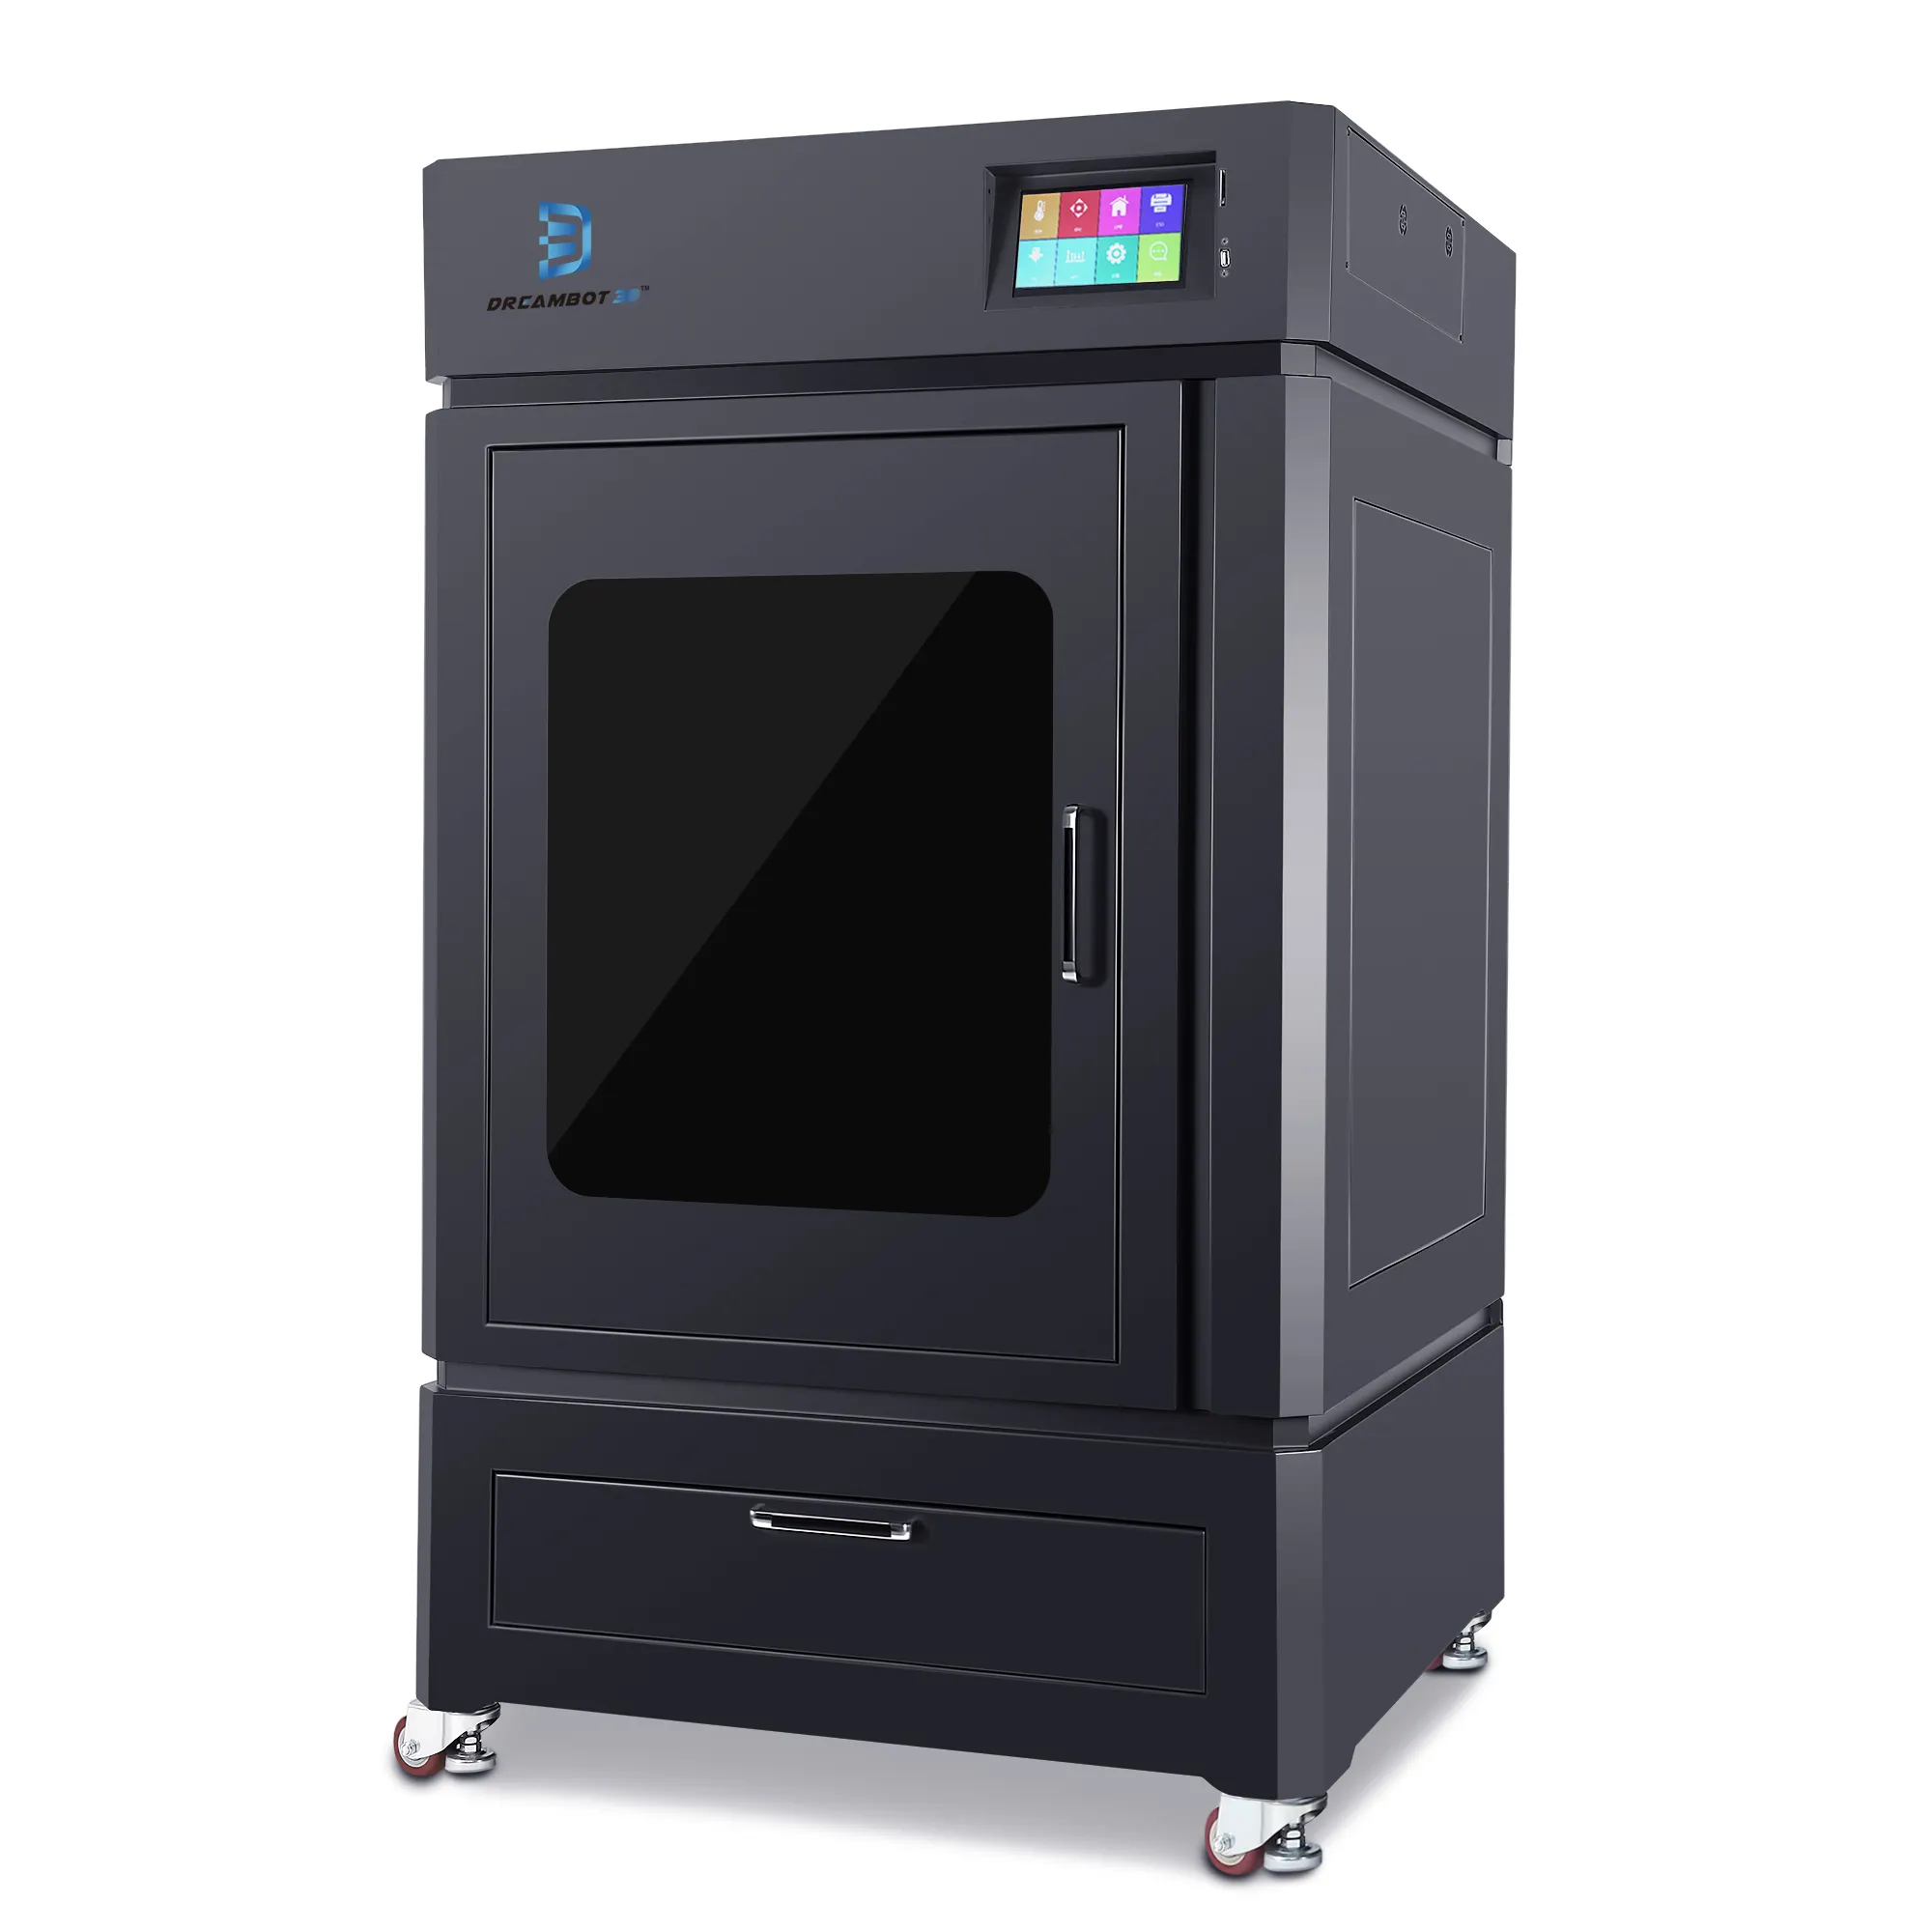 600x600x800mm 3D-Druckmaschine in Industrie qualität Profession eller Multifunktions-Groß-FDM-3D-Drucker